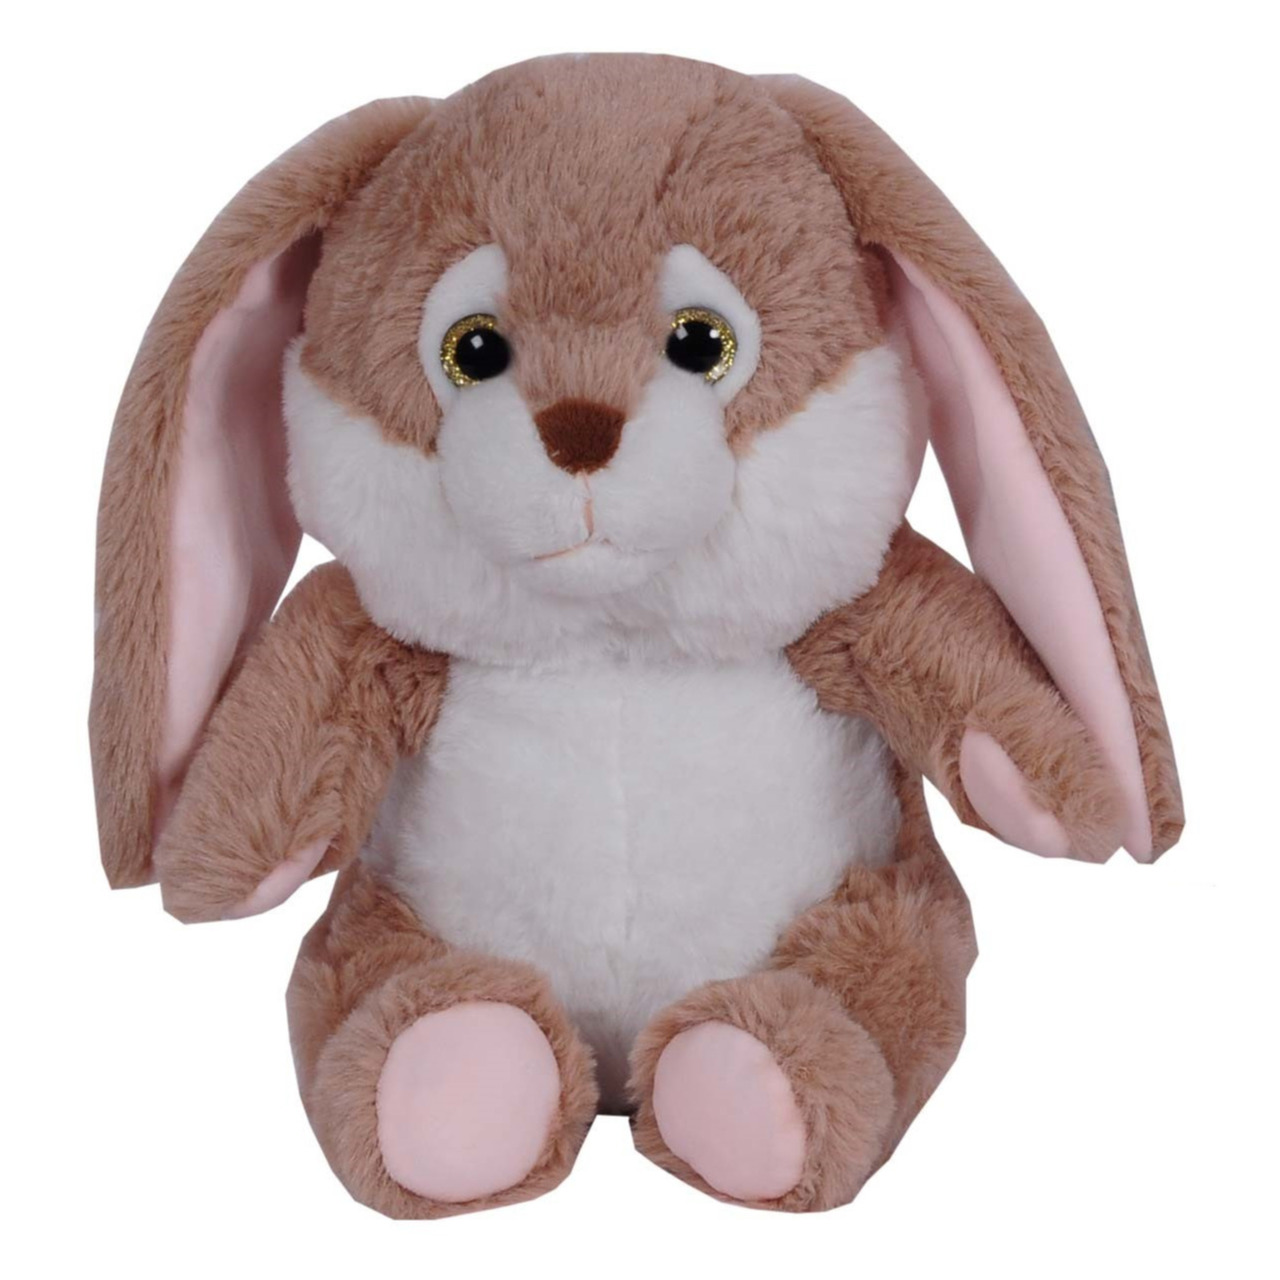 Pluche speelgoed knuffeldier Bruin konijn met flaporen van 24 cm